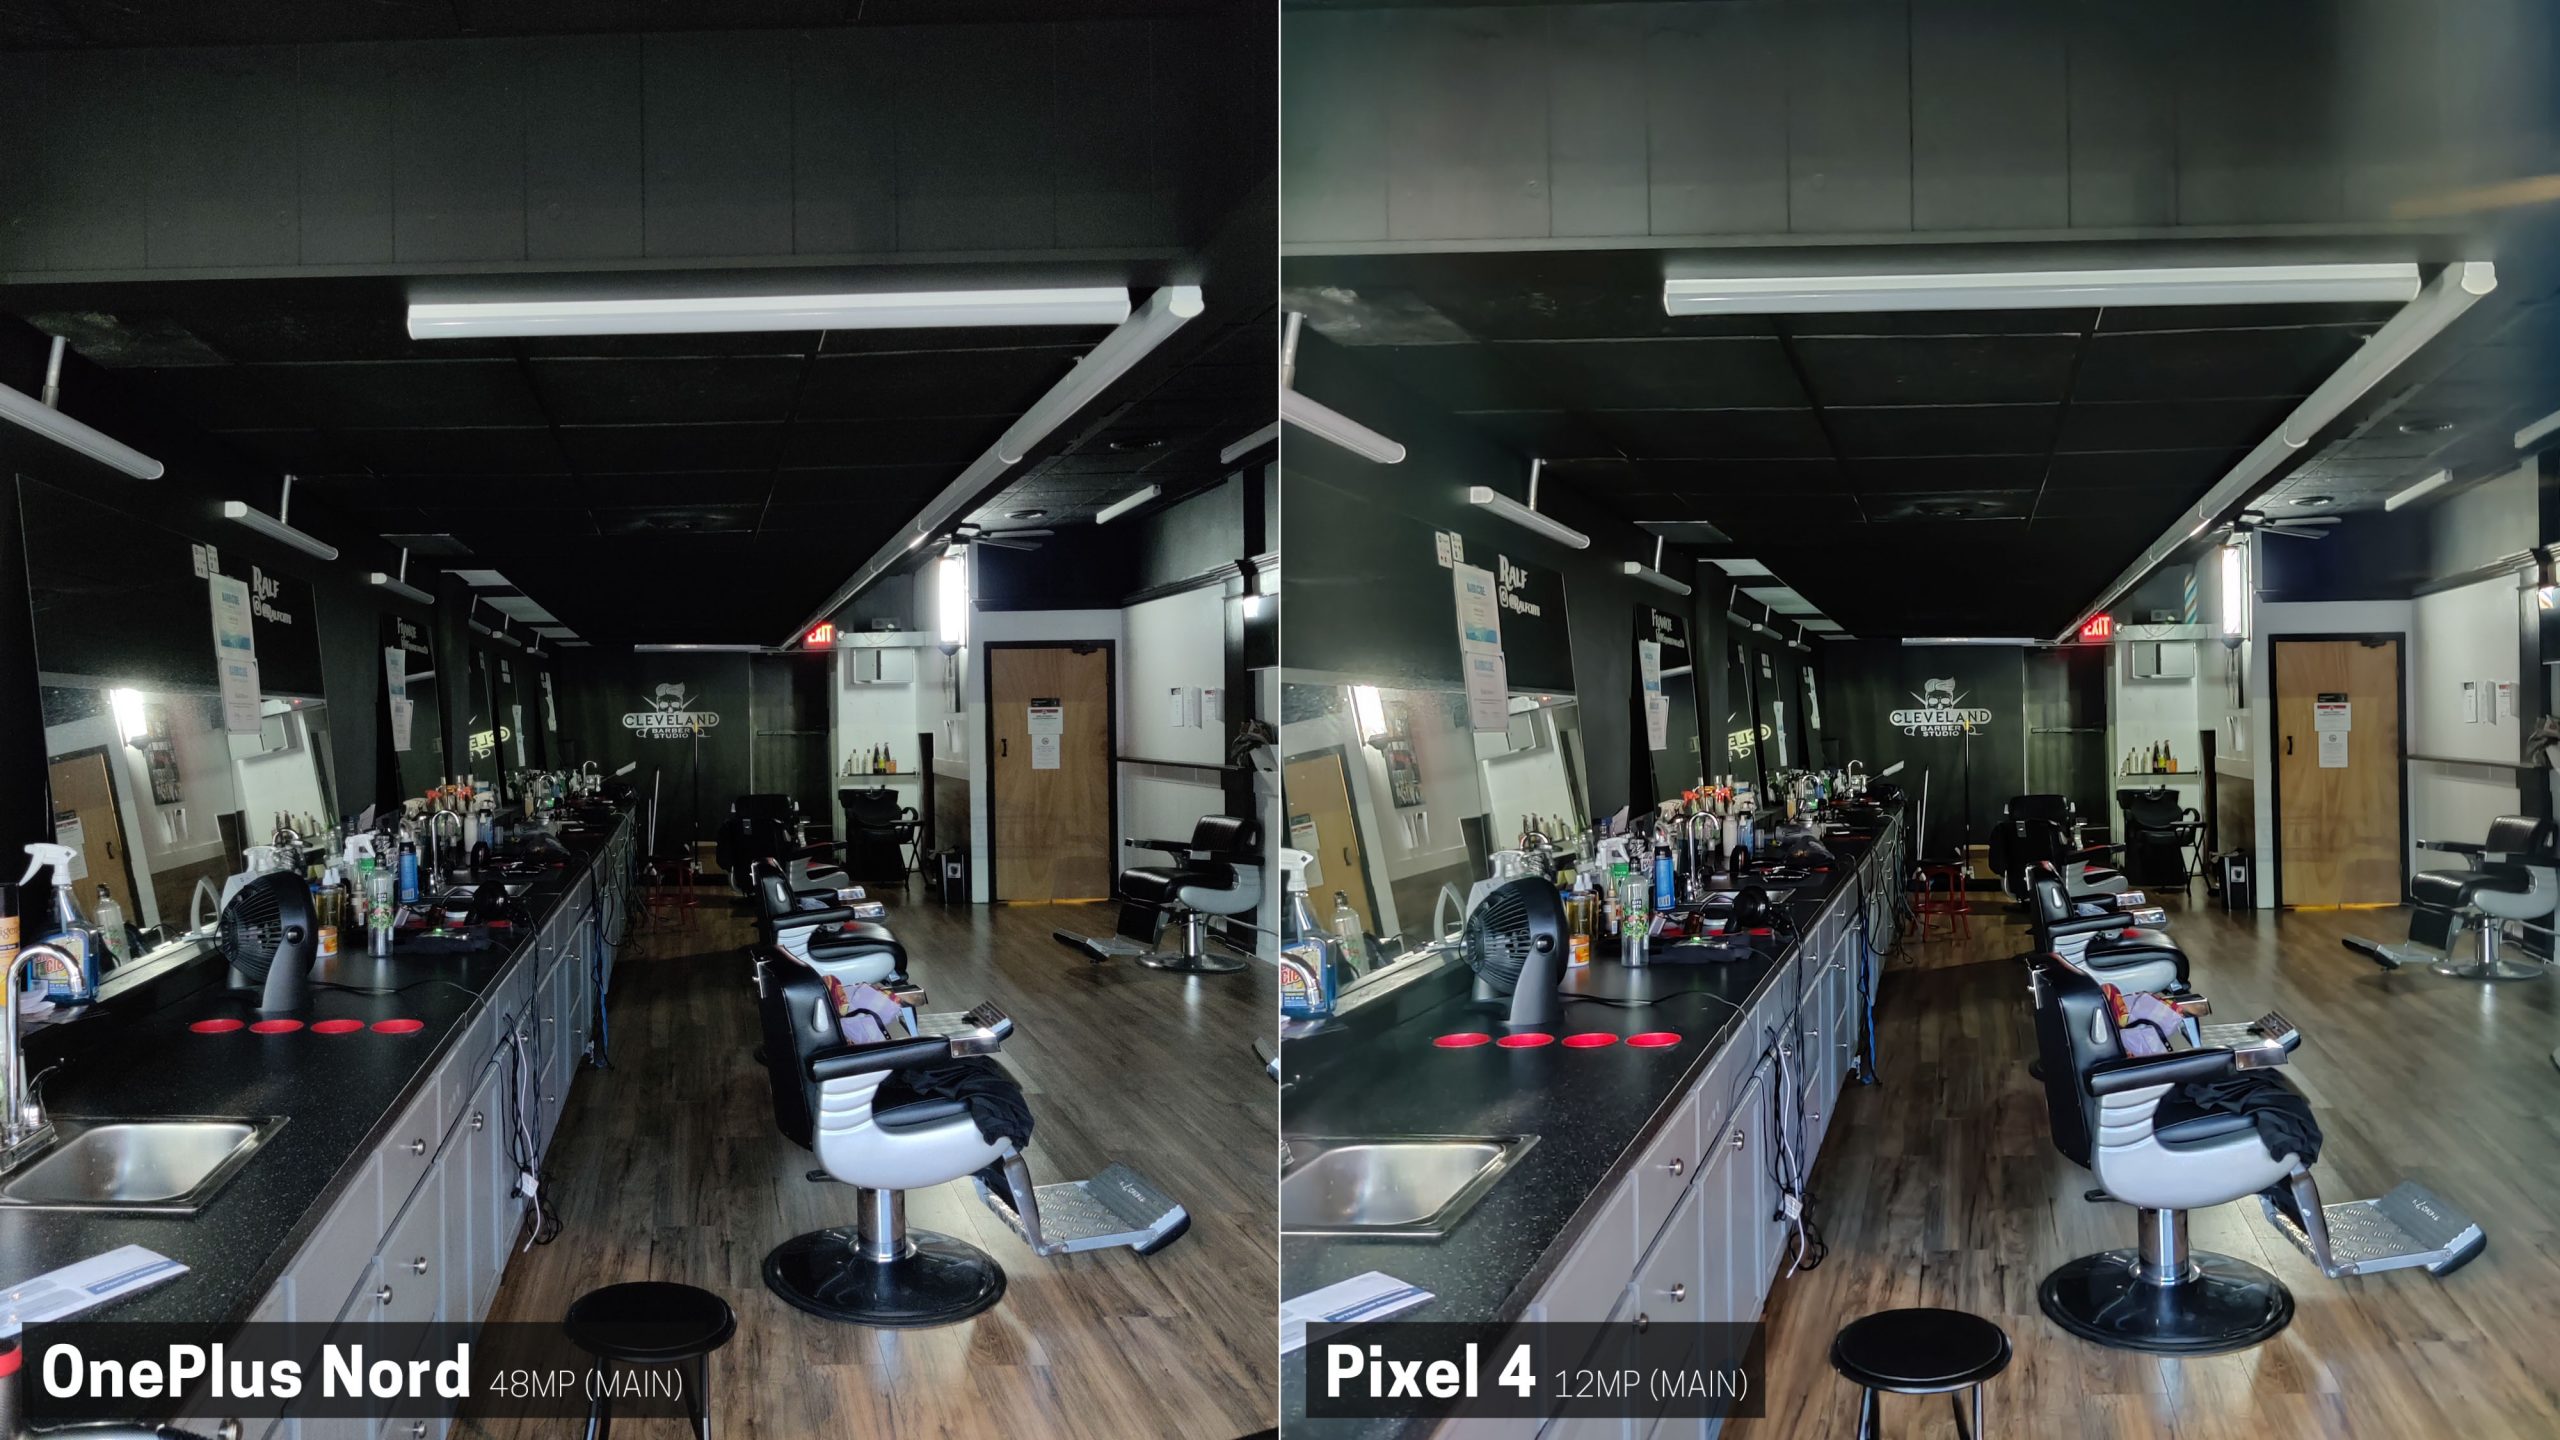 Pixel 4 melenyapkan OnePlus Nord dalam perbandingan kamera 22